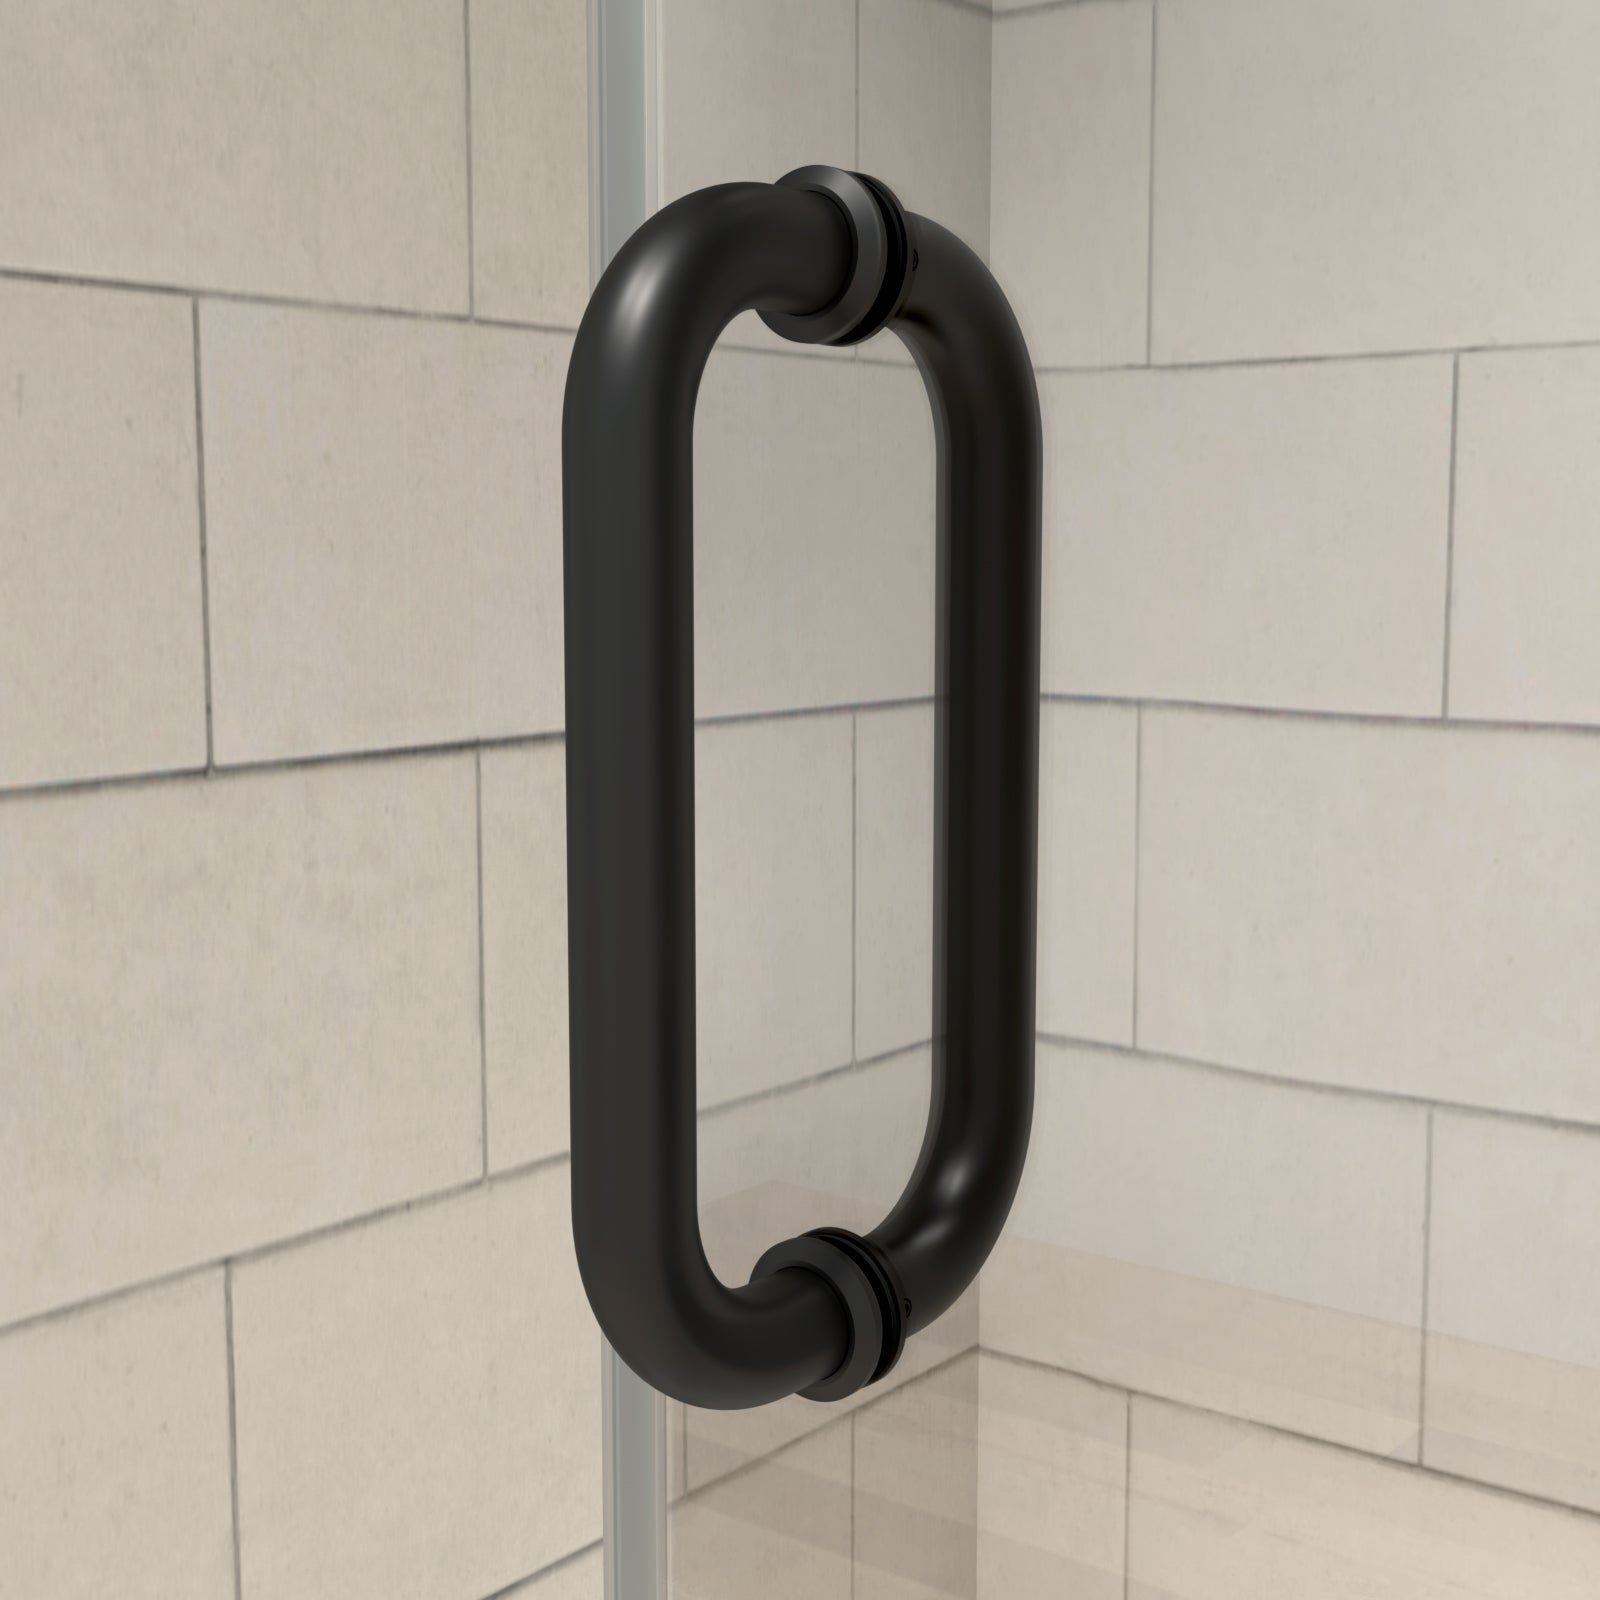 Sliding Shower Doors Matte Black Stainless Steel Frameless